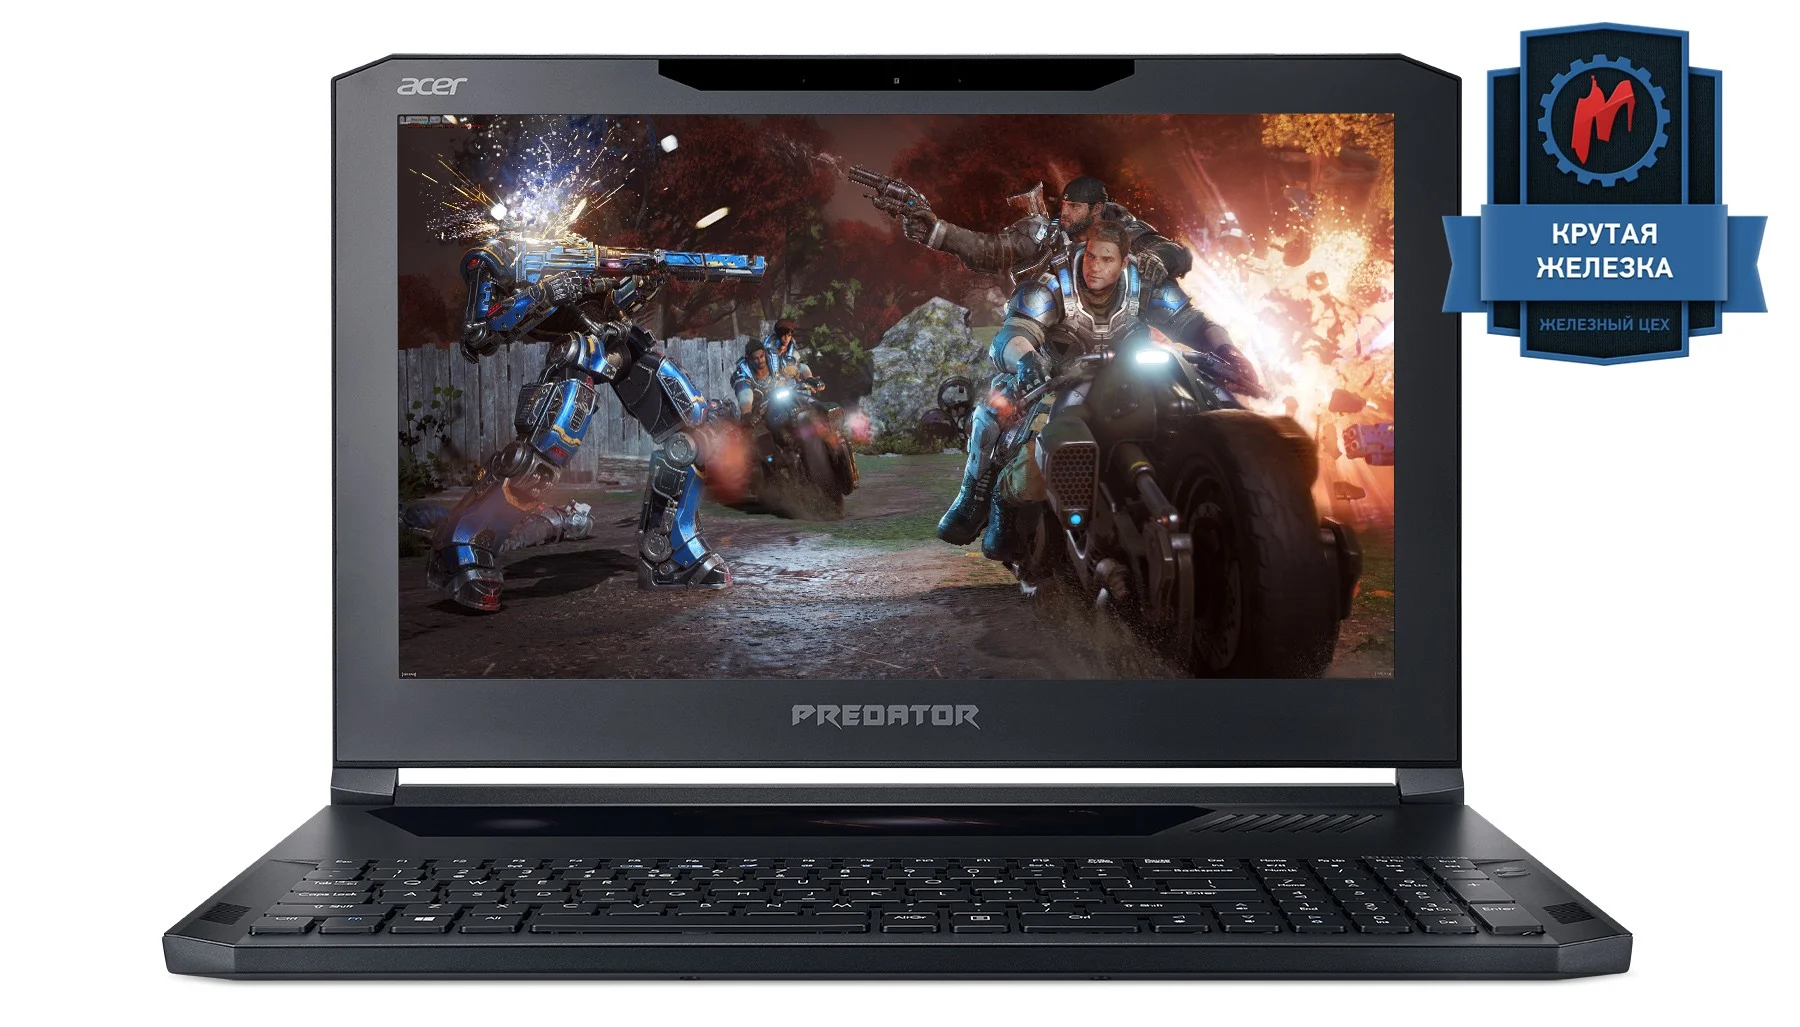 Тест ультрабука Acer Predator Triton 700 на базе NVIDIA GeForce GTX 1080 Max-Q - изображение обложка